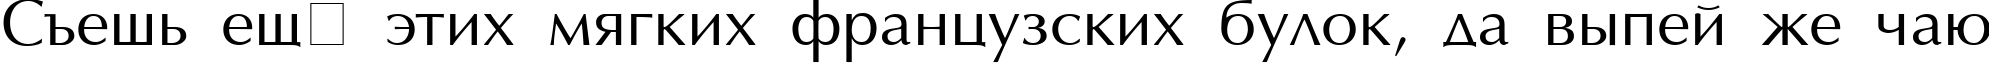 Пример написания шрифтом AGOptimaCyr Roman текста на русском